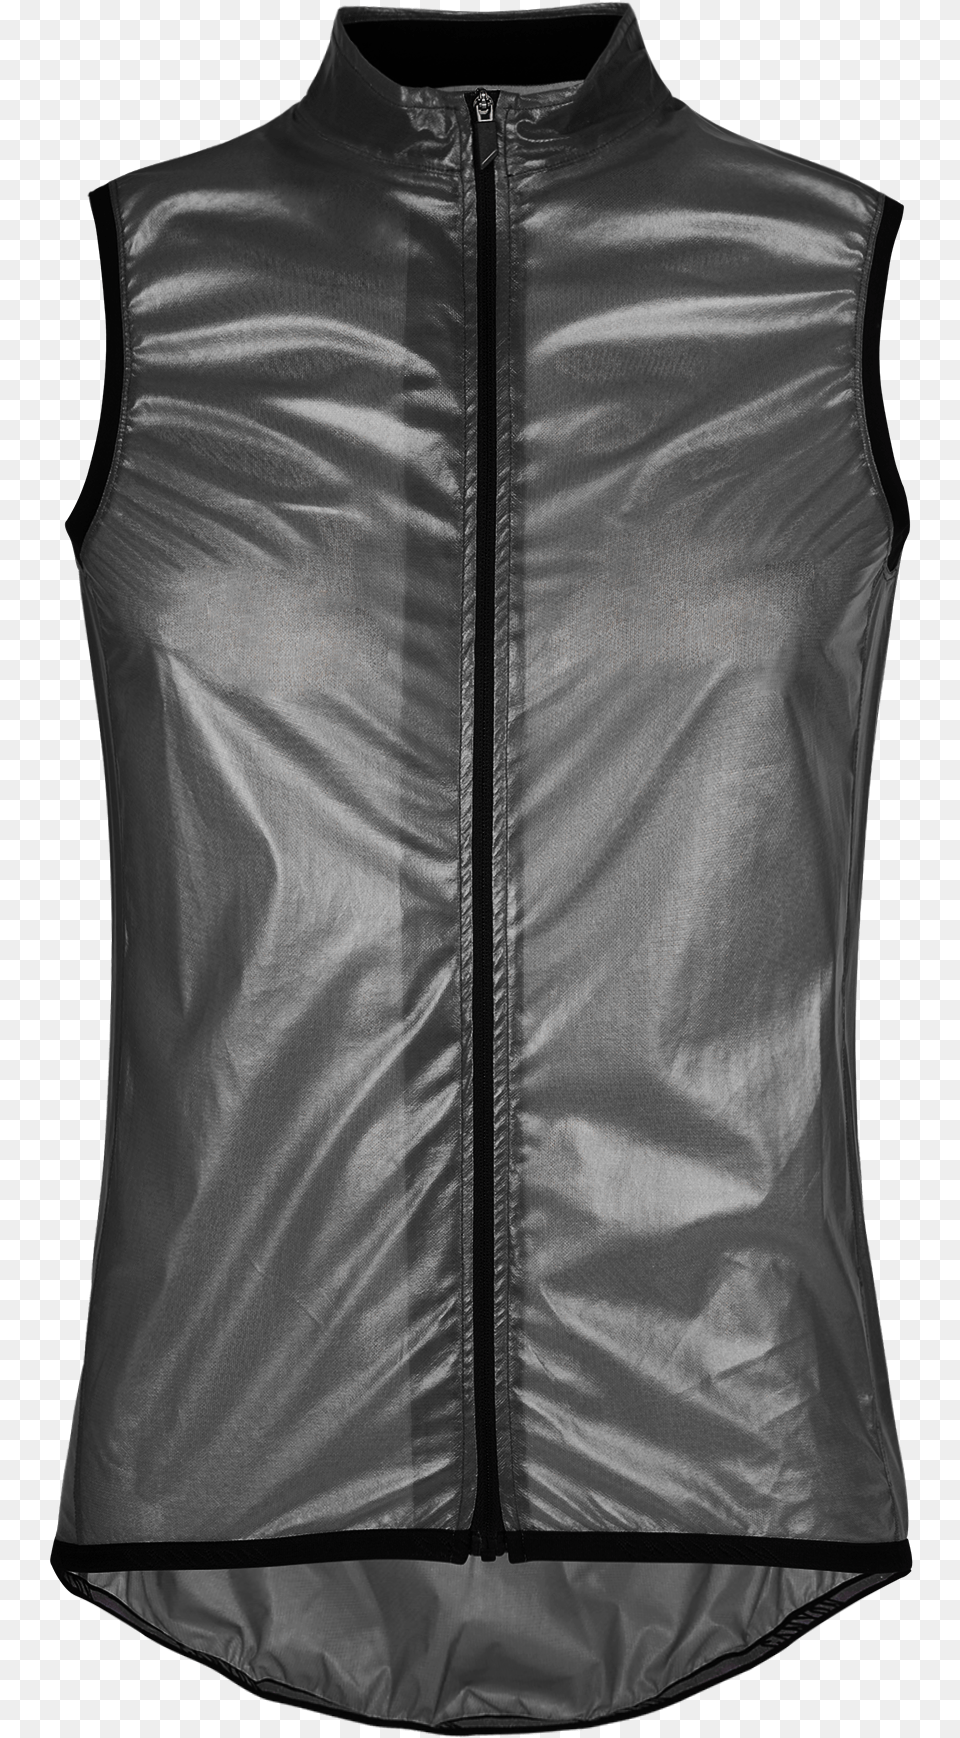 Canyon Wmn Signature Pro Vest Vest, Clothing, Lifejacket Png Image